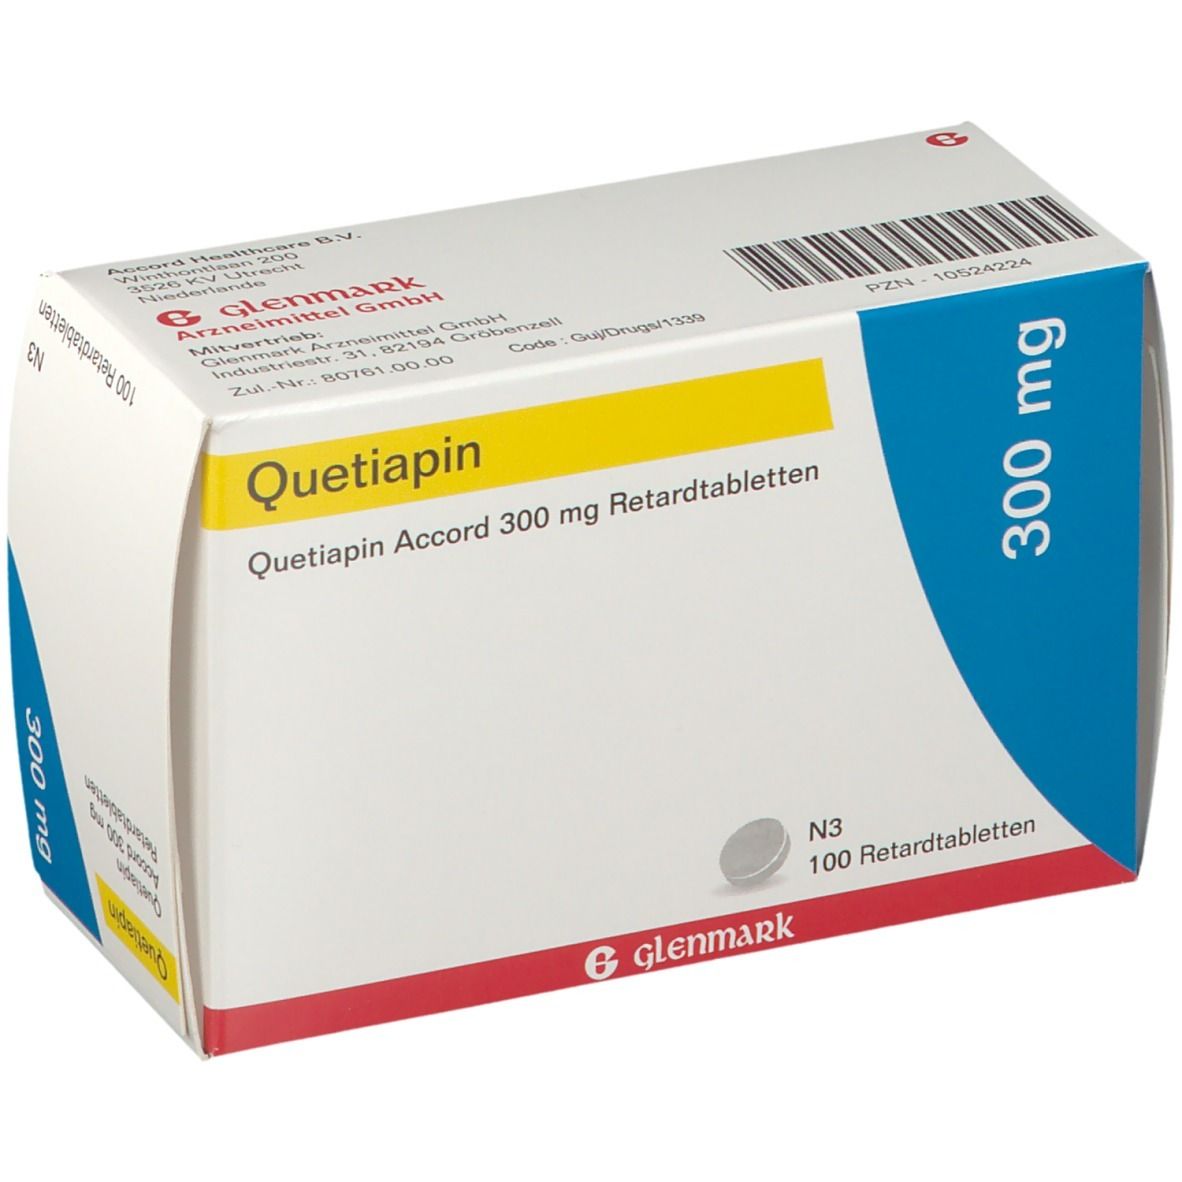 Quetiapin Accord 300 mg